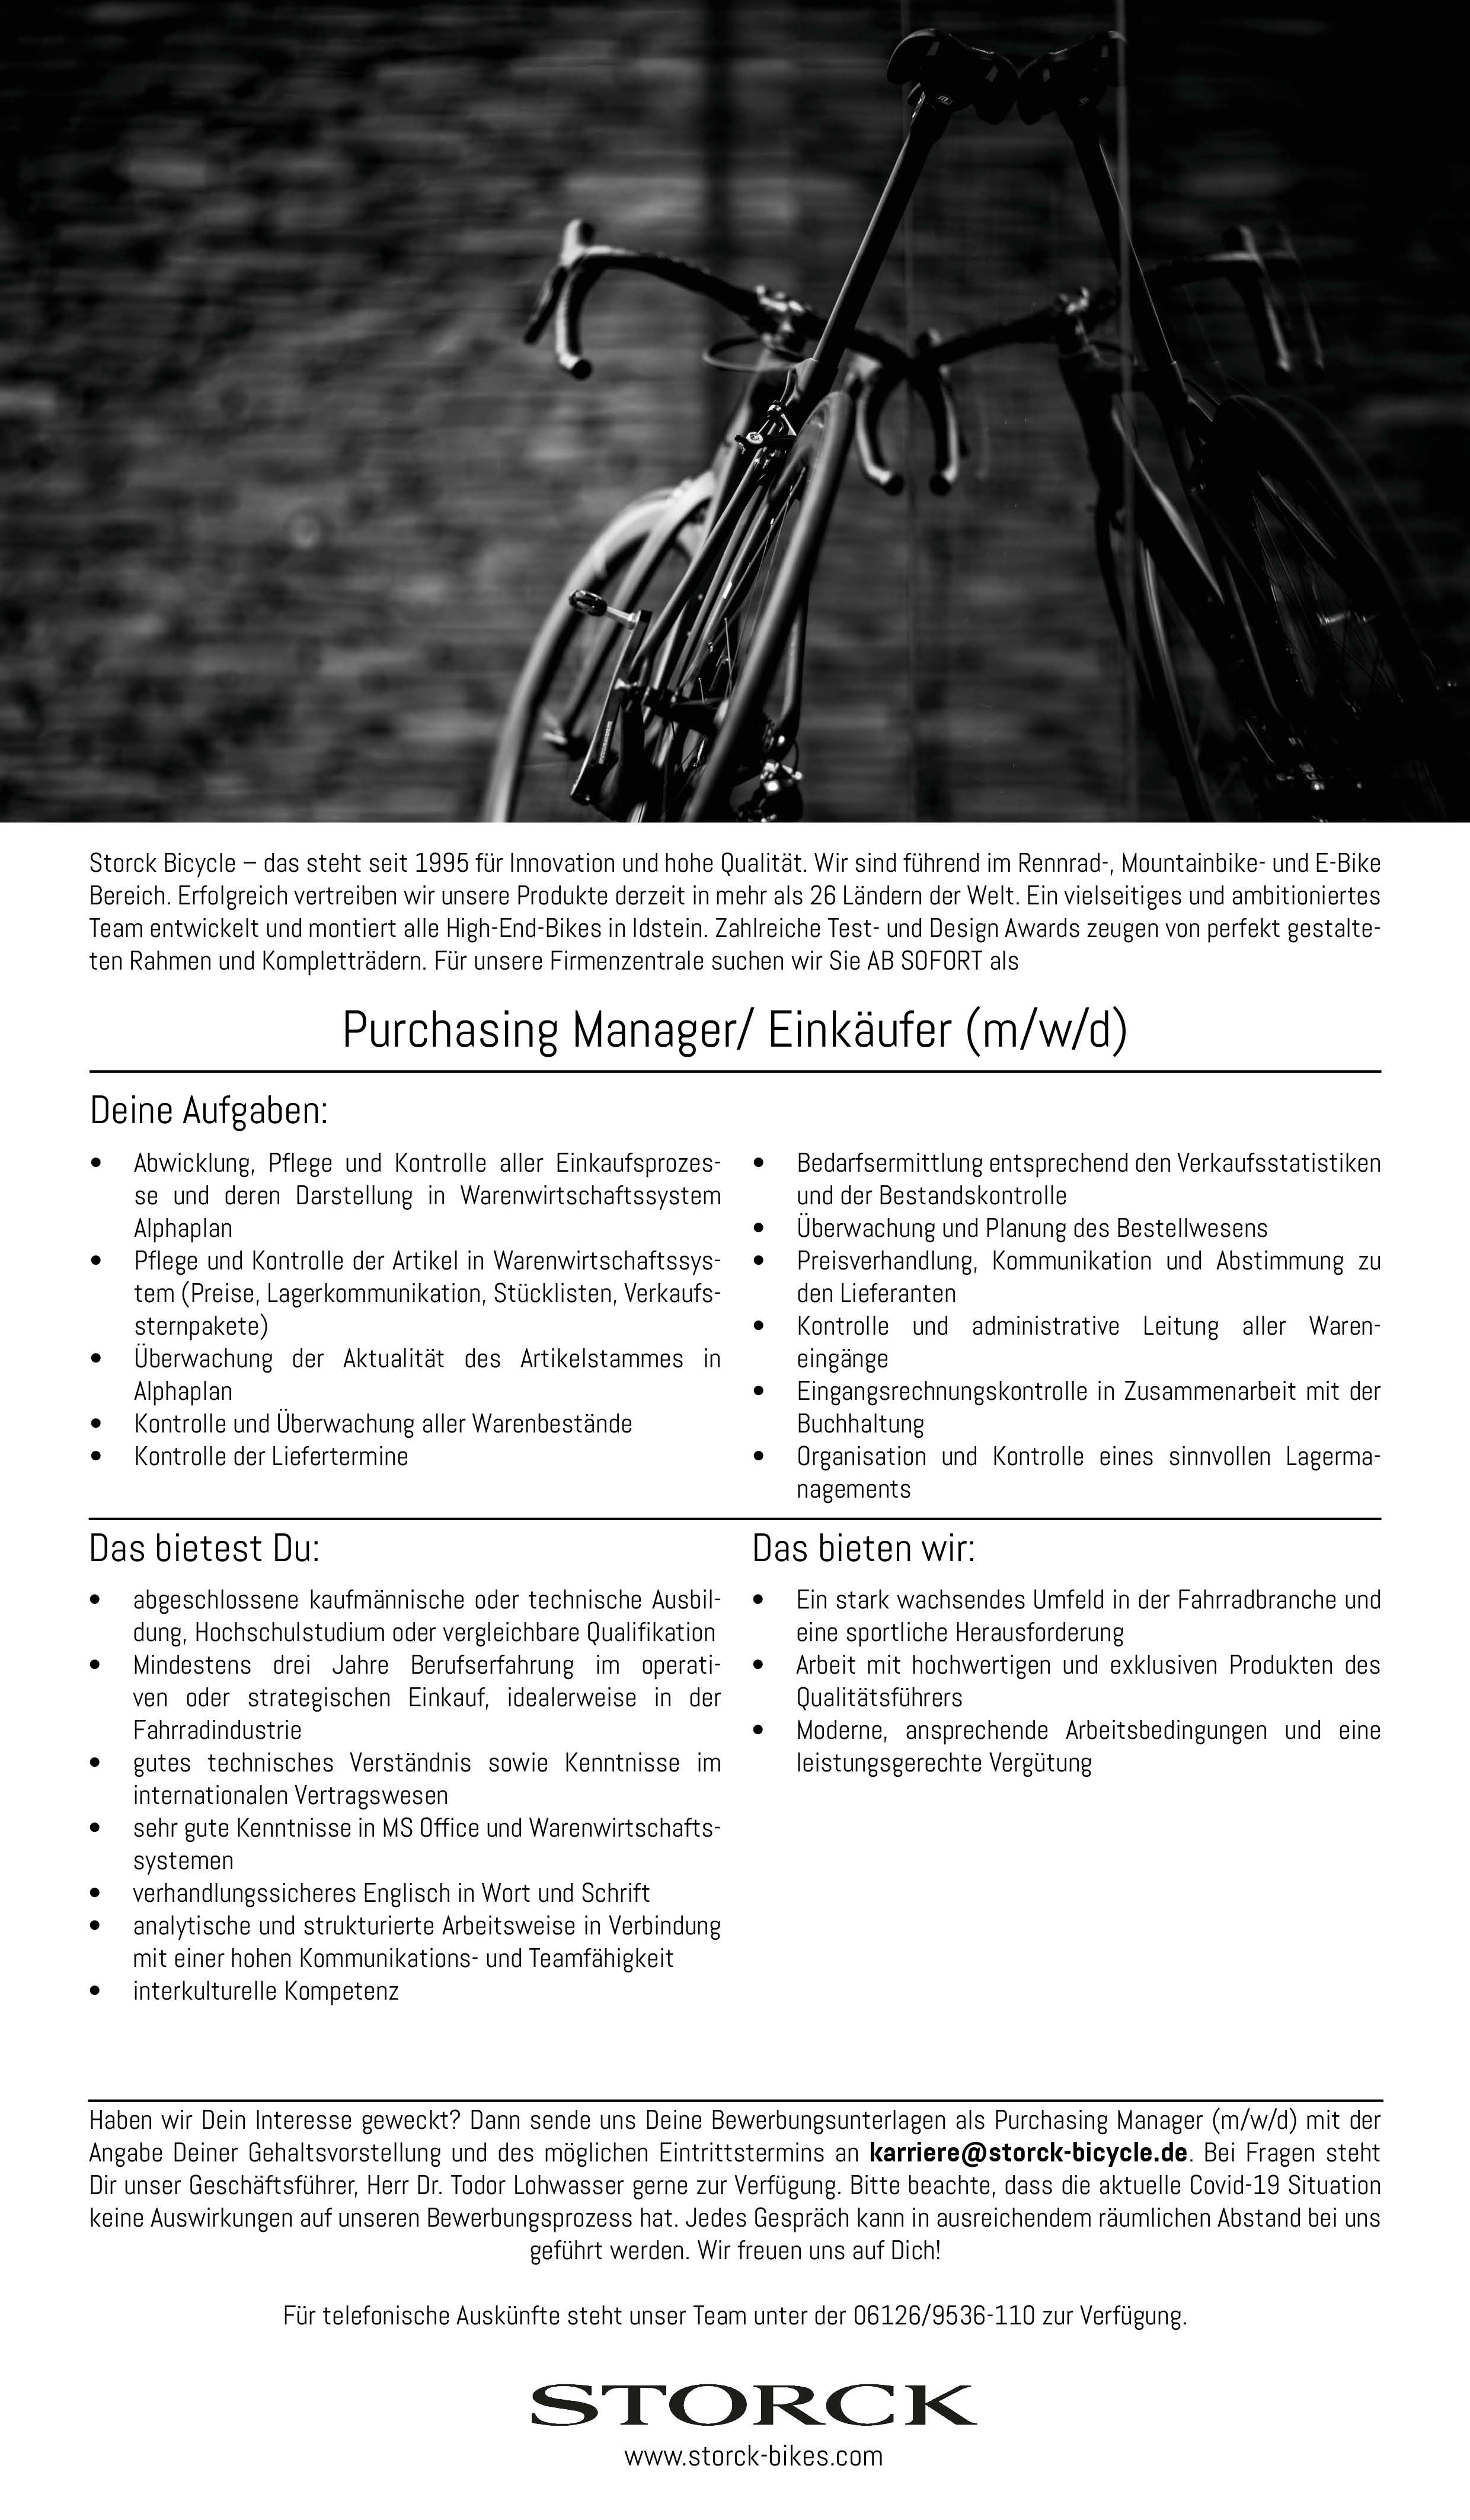 Purchasing Manager/ Mitarbeiter im Einkauf (m/w/d)